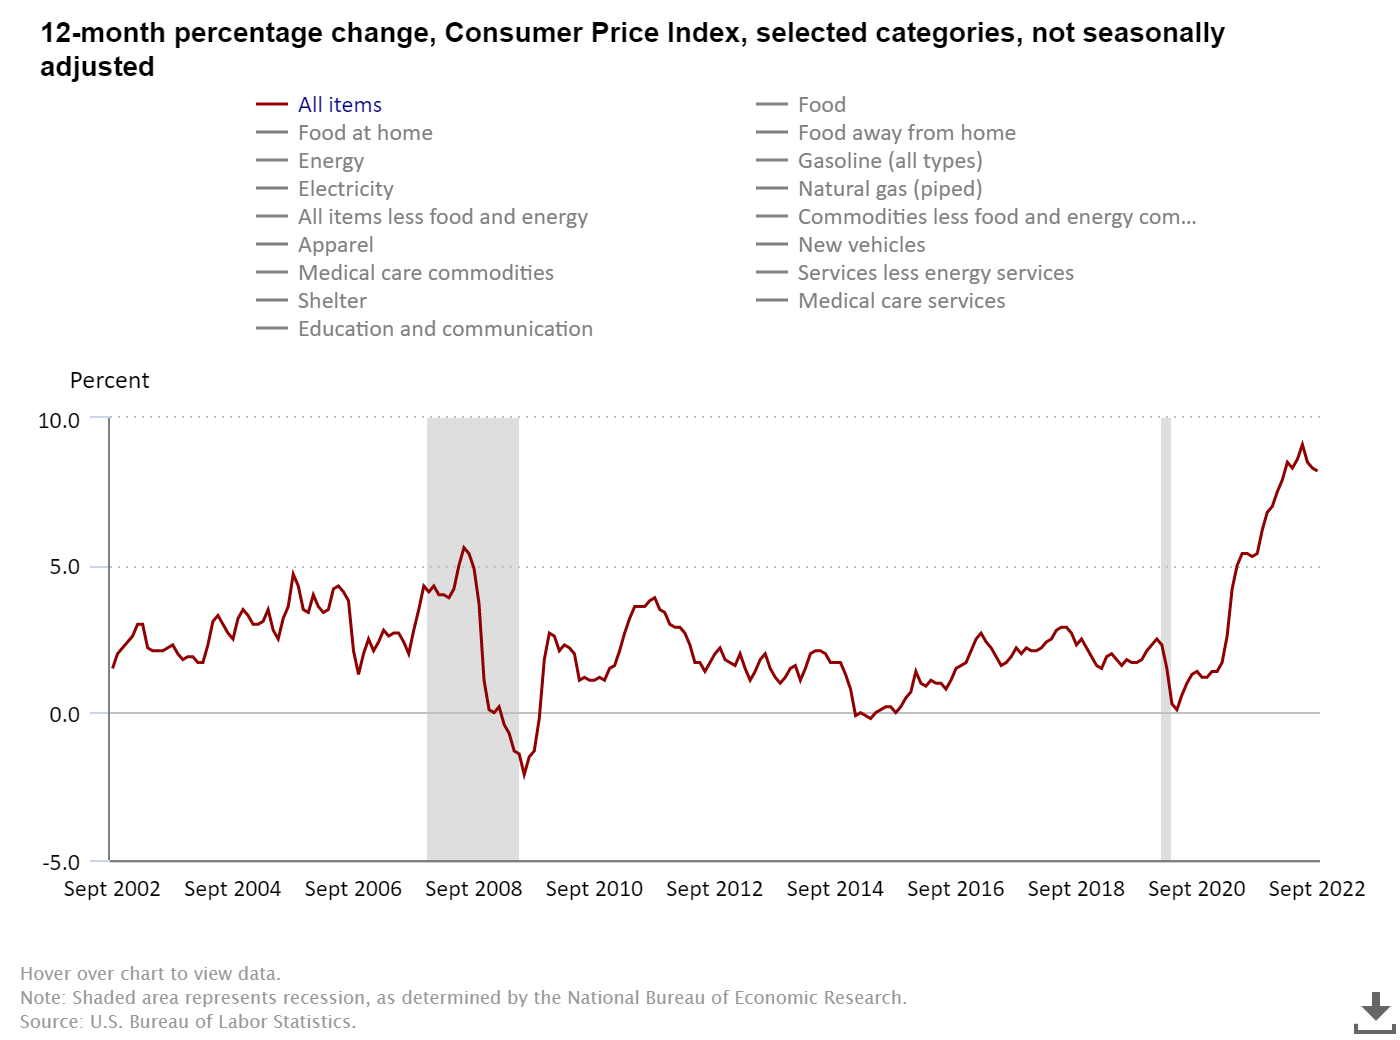 US Consumer Price Index